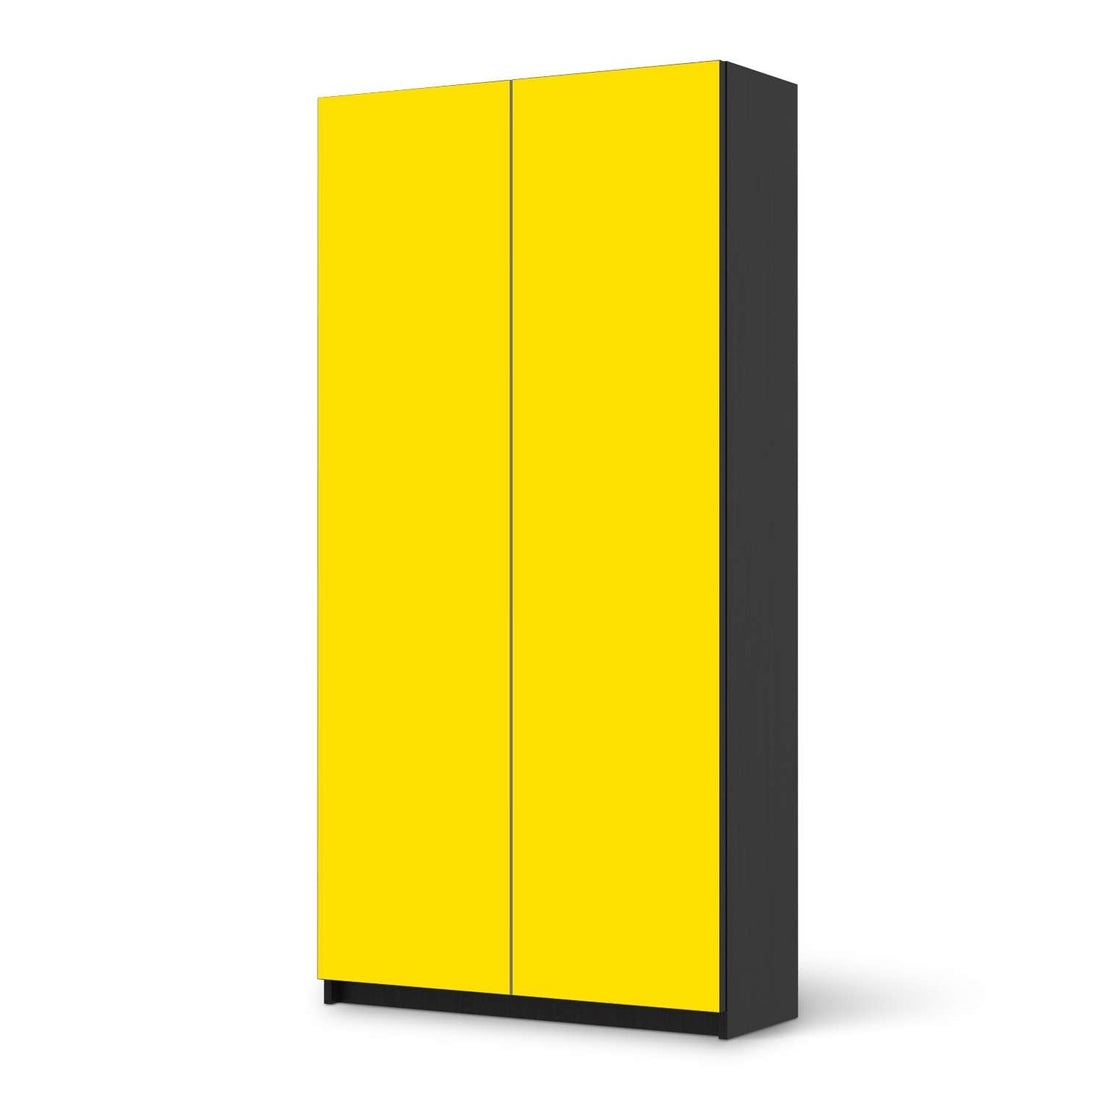 Klebefolie für Möbel Gelb Dark - IKEA Pax Schrank 201 cm Höhe - 2 Türen - schwarz